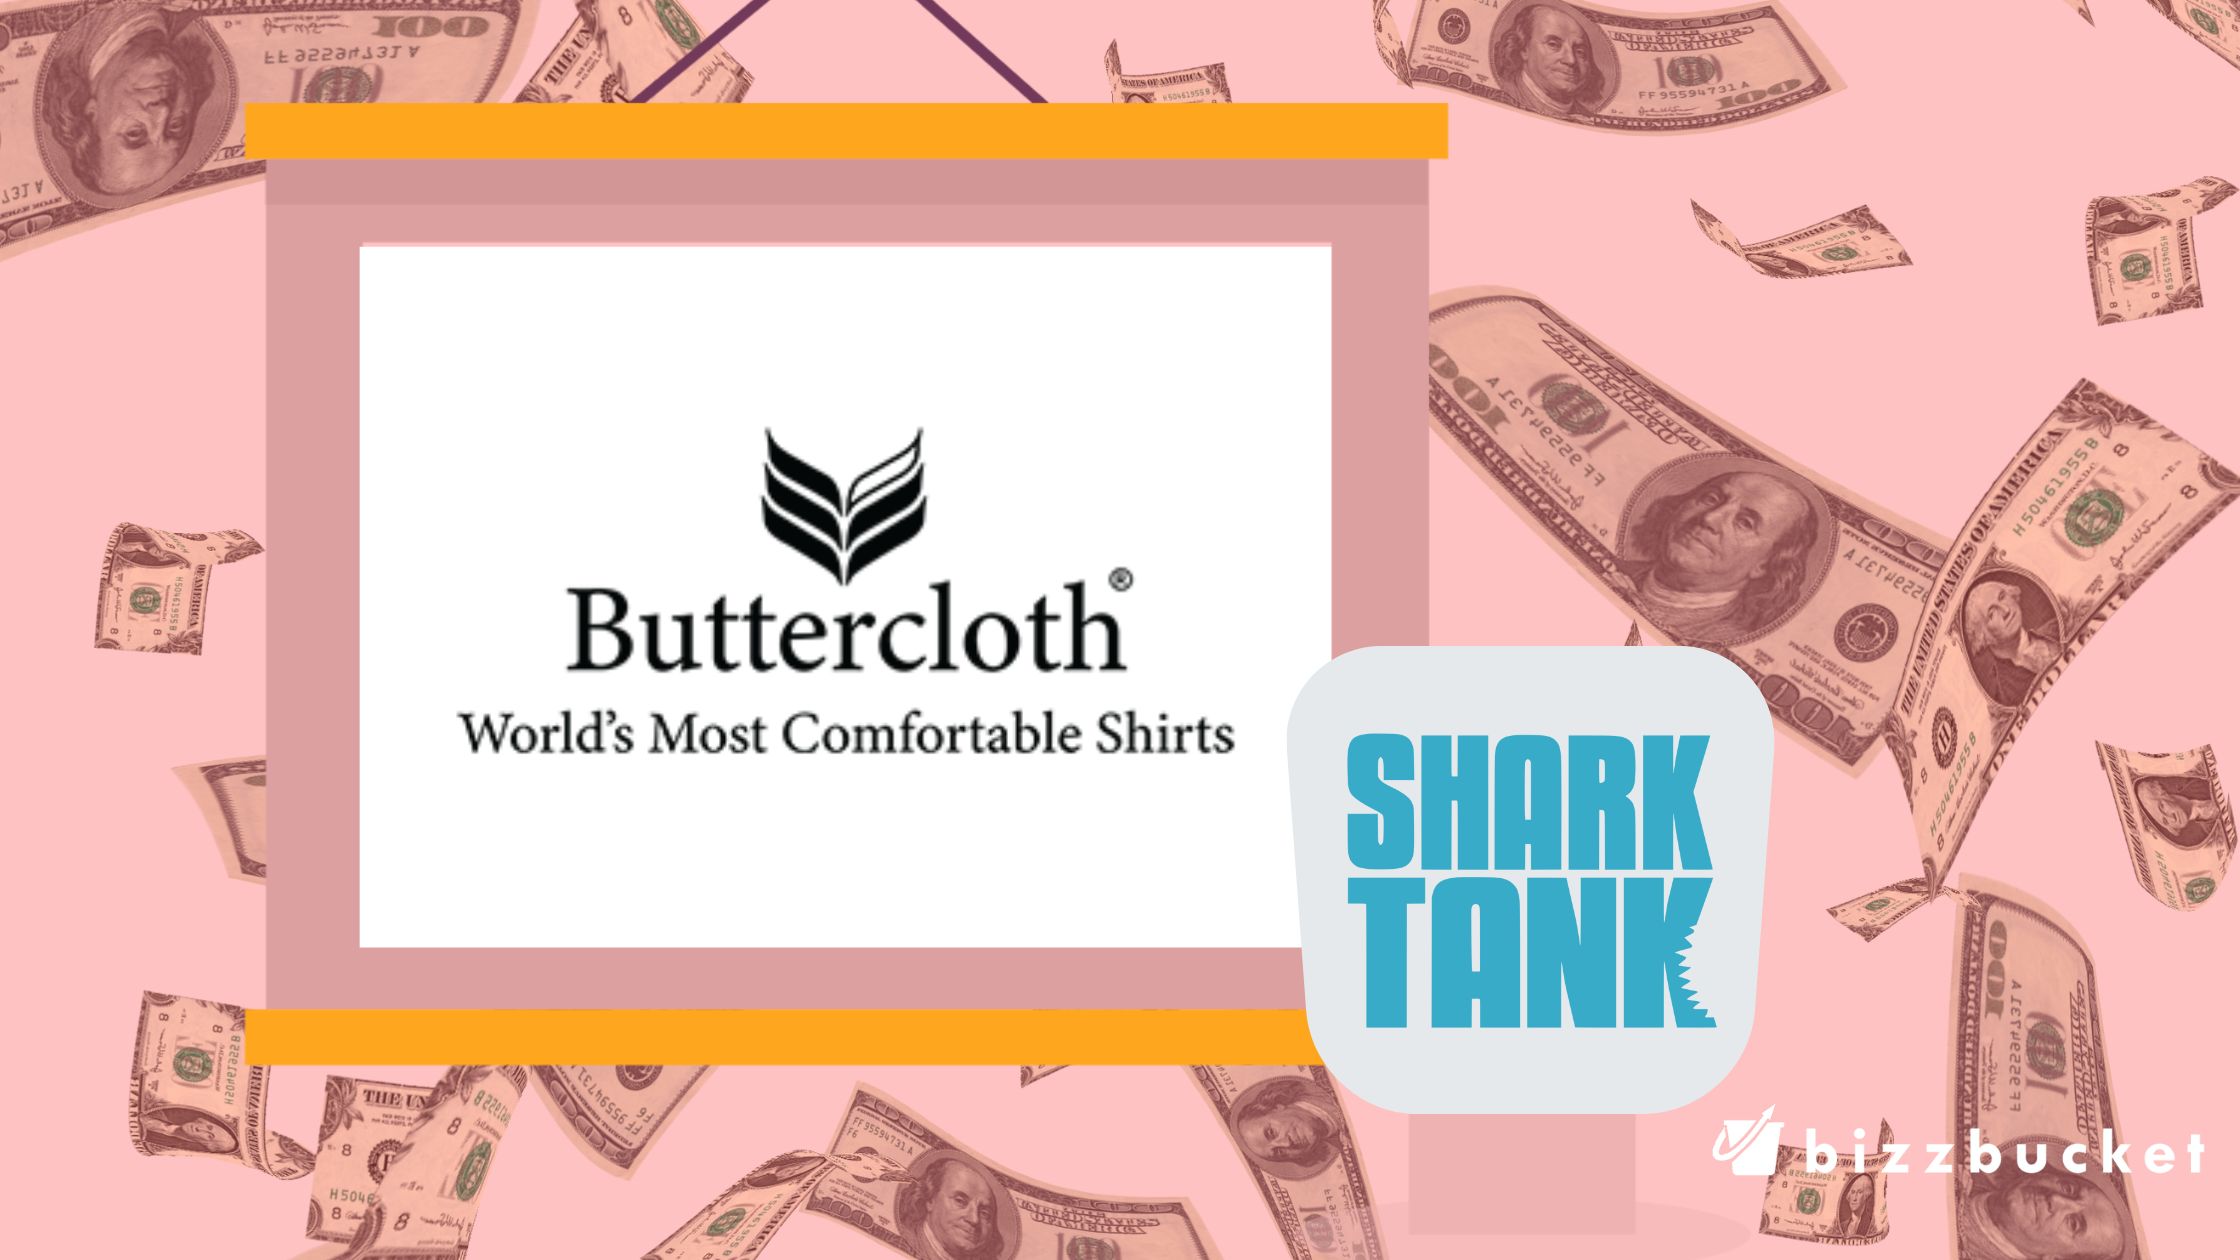 Butter Cloth shark tank update